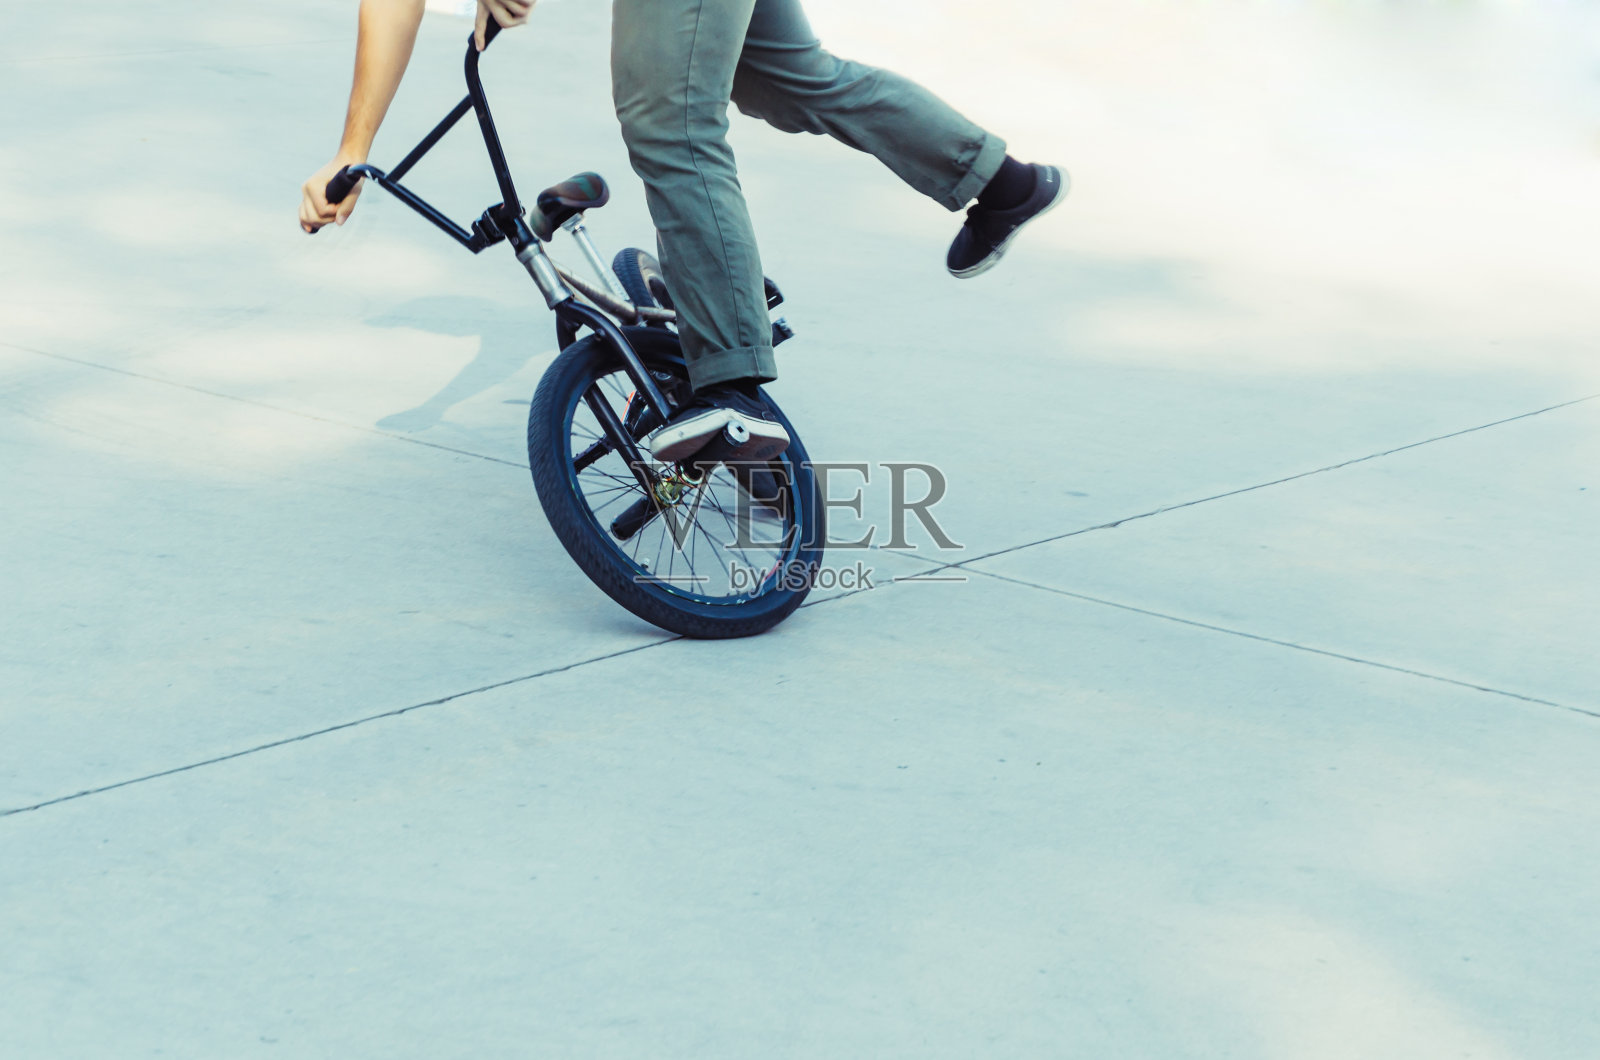 自行车骑手表演一个戏法照片摄影图片